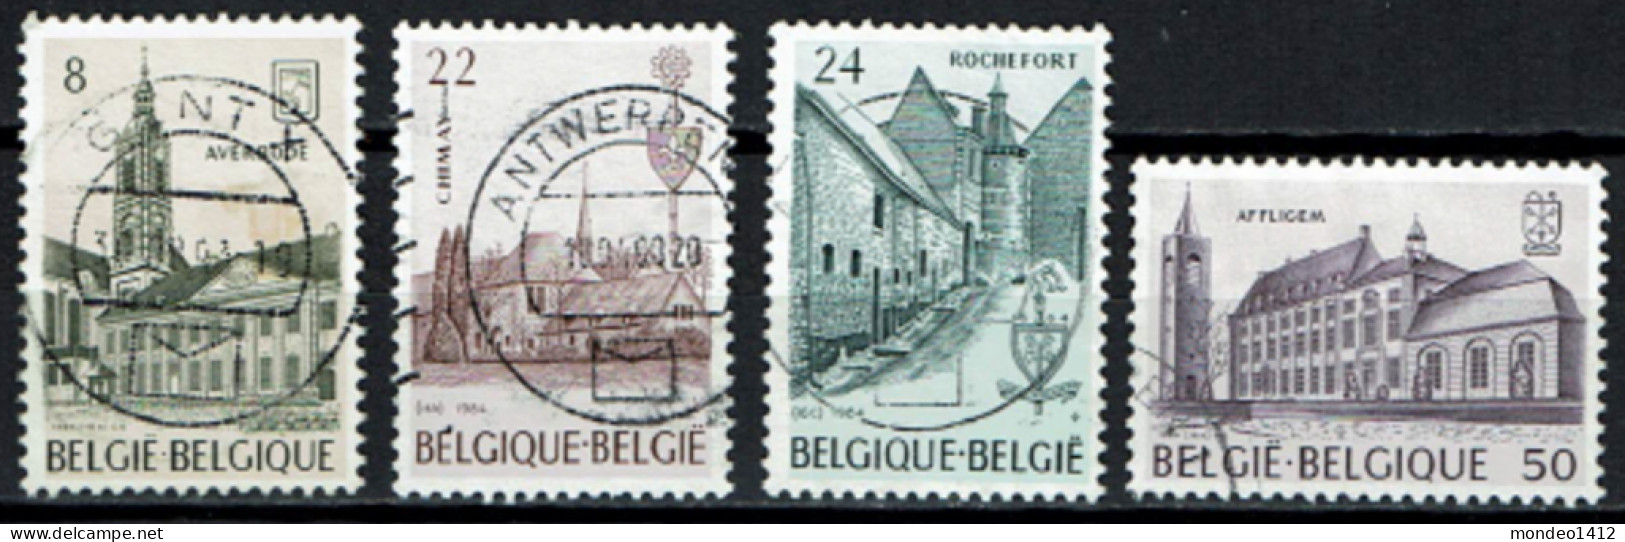 België 1984 OBP 2146/2149 - Y&T 2146/49 - Abdijen, Abbayes, Abbeys - Averbode, Chimay, Rochefort, Affligem - Gebruikt